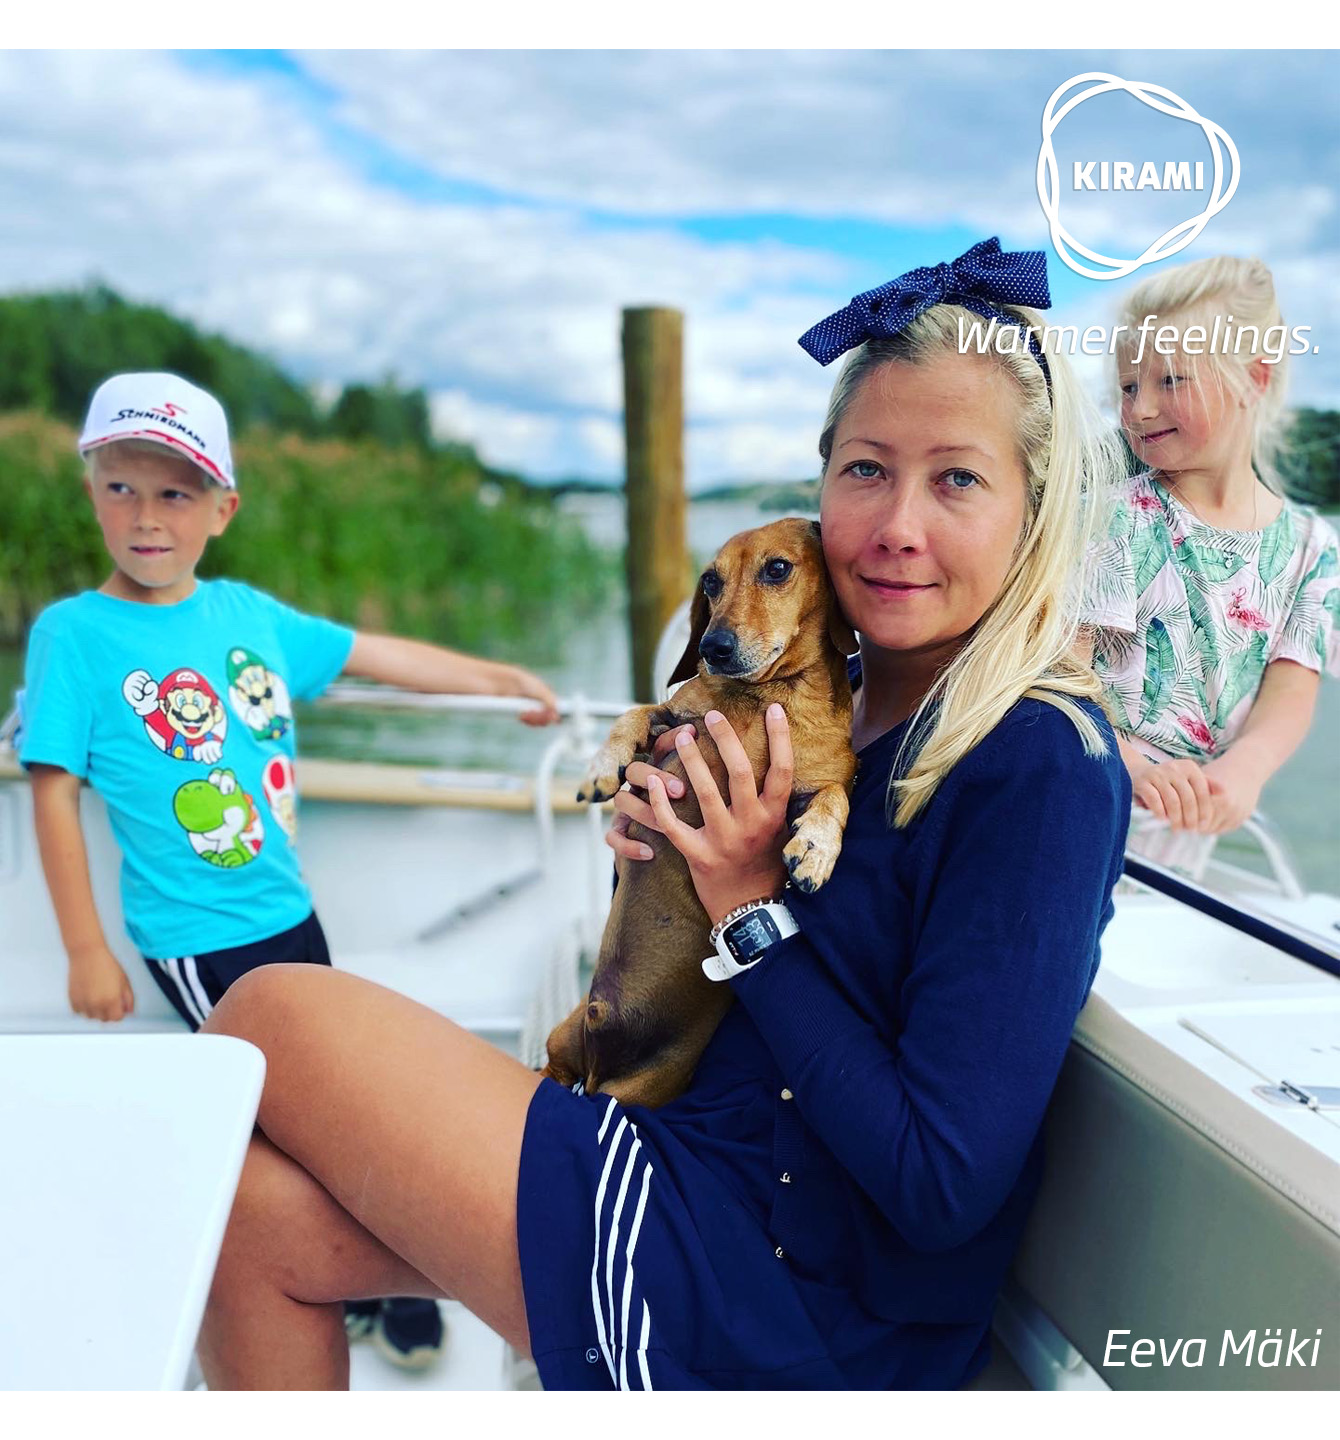 Kirami remercie Onni et la famille Mäki pour leur témoignage et ces belles photos | Kirami